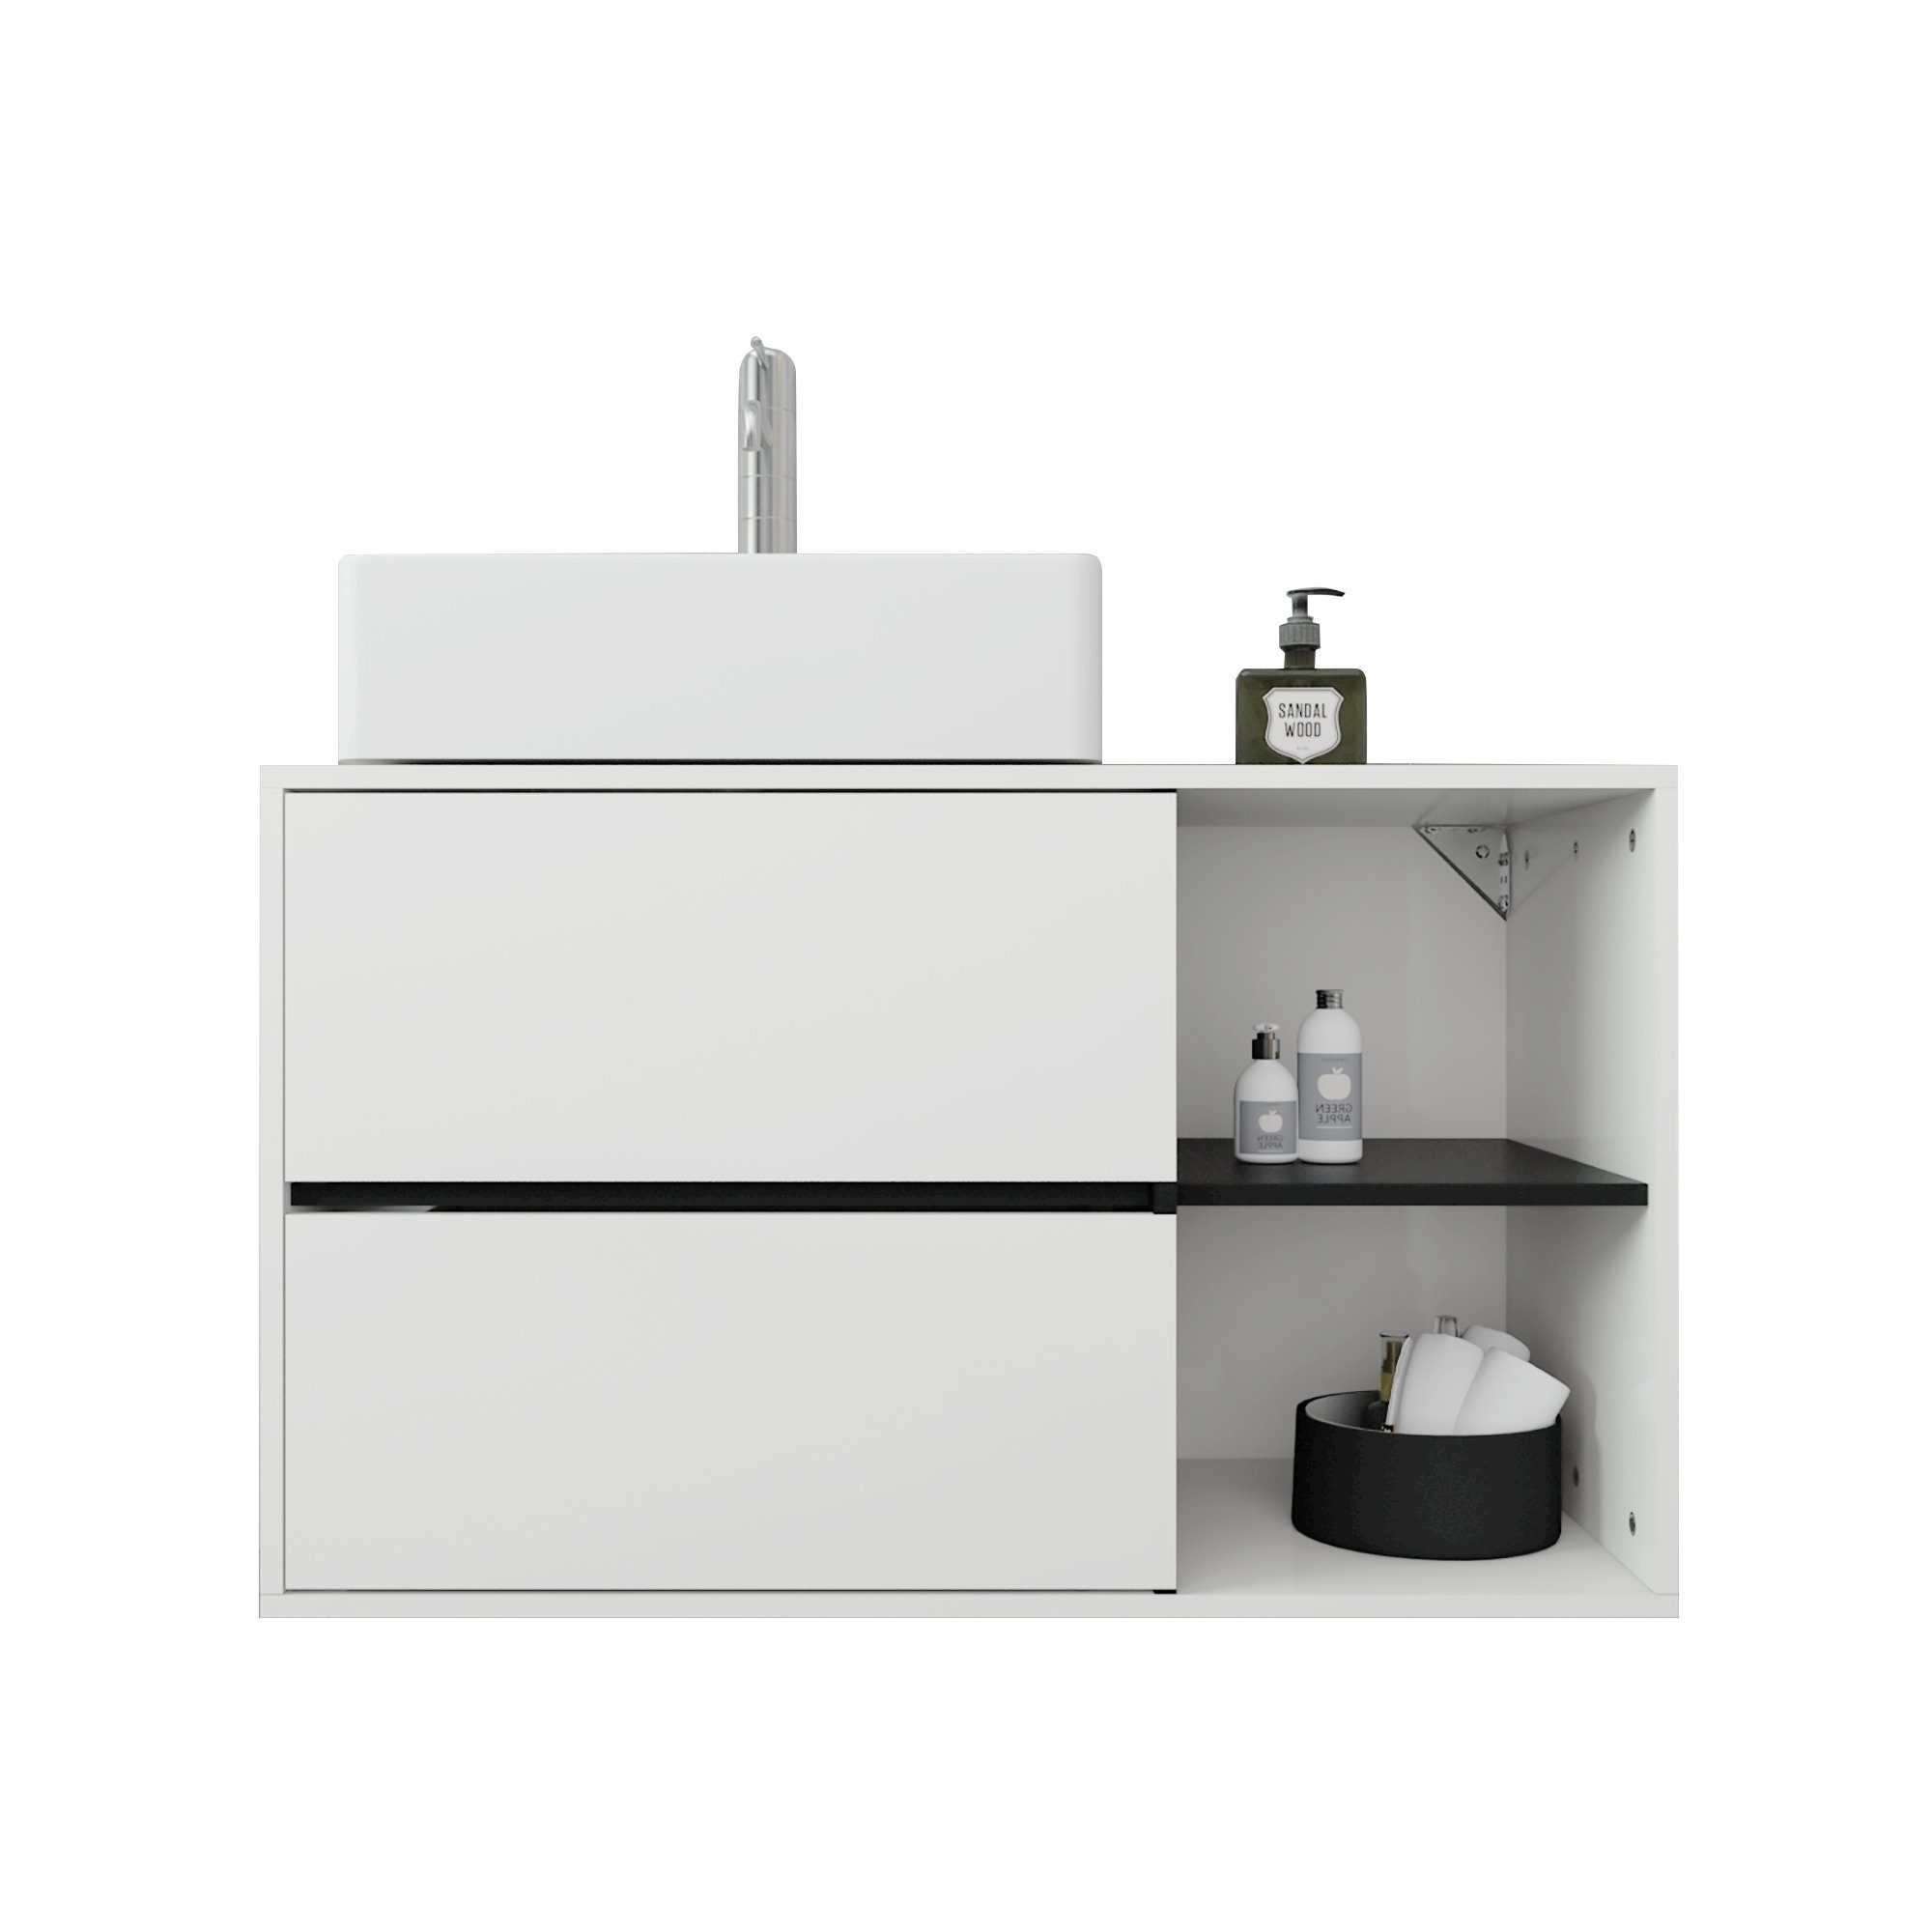 Waschbeckenunterschrank weiß/schwarz ML-DESIGN 100x60x45,5cm Badmöbel-Set